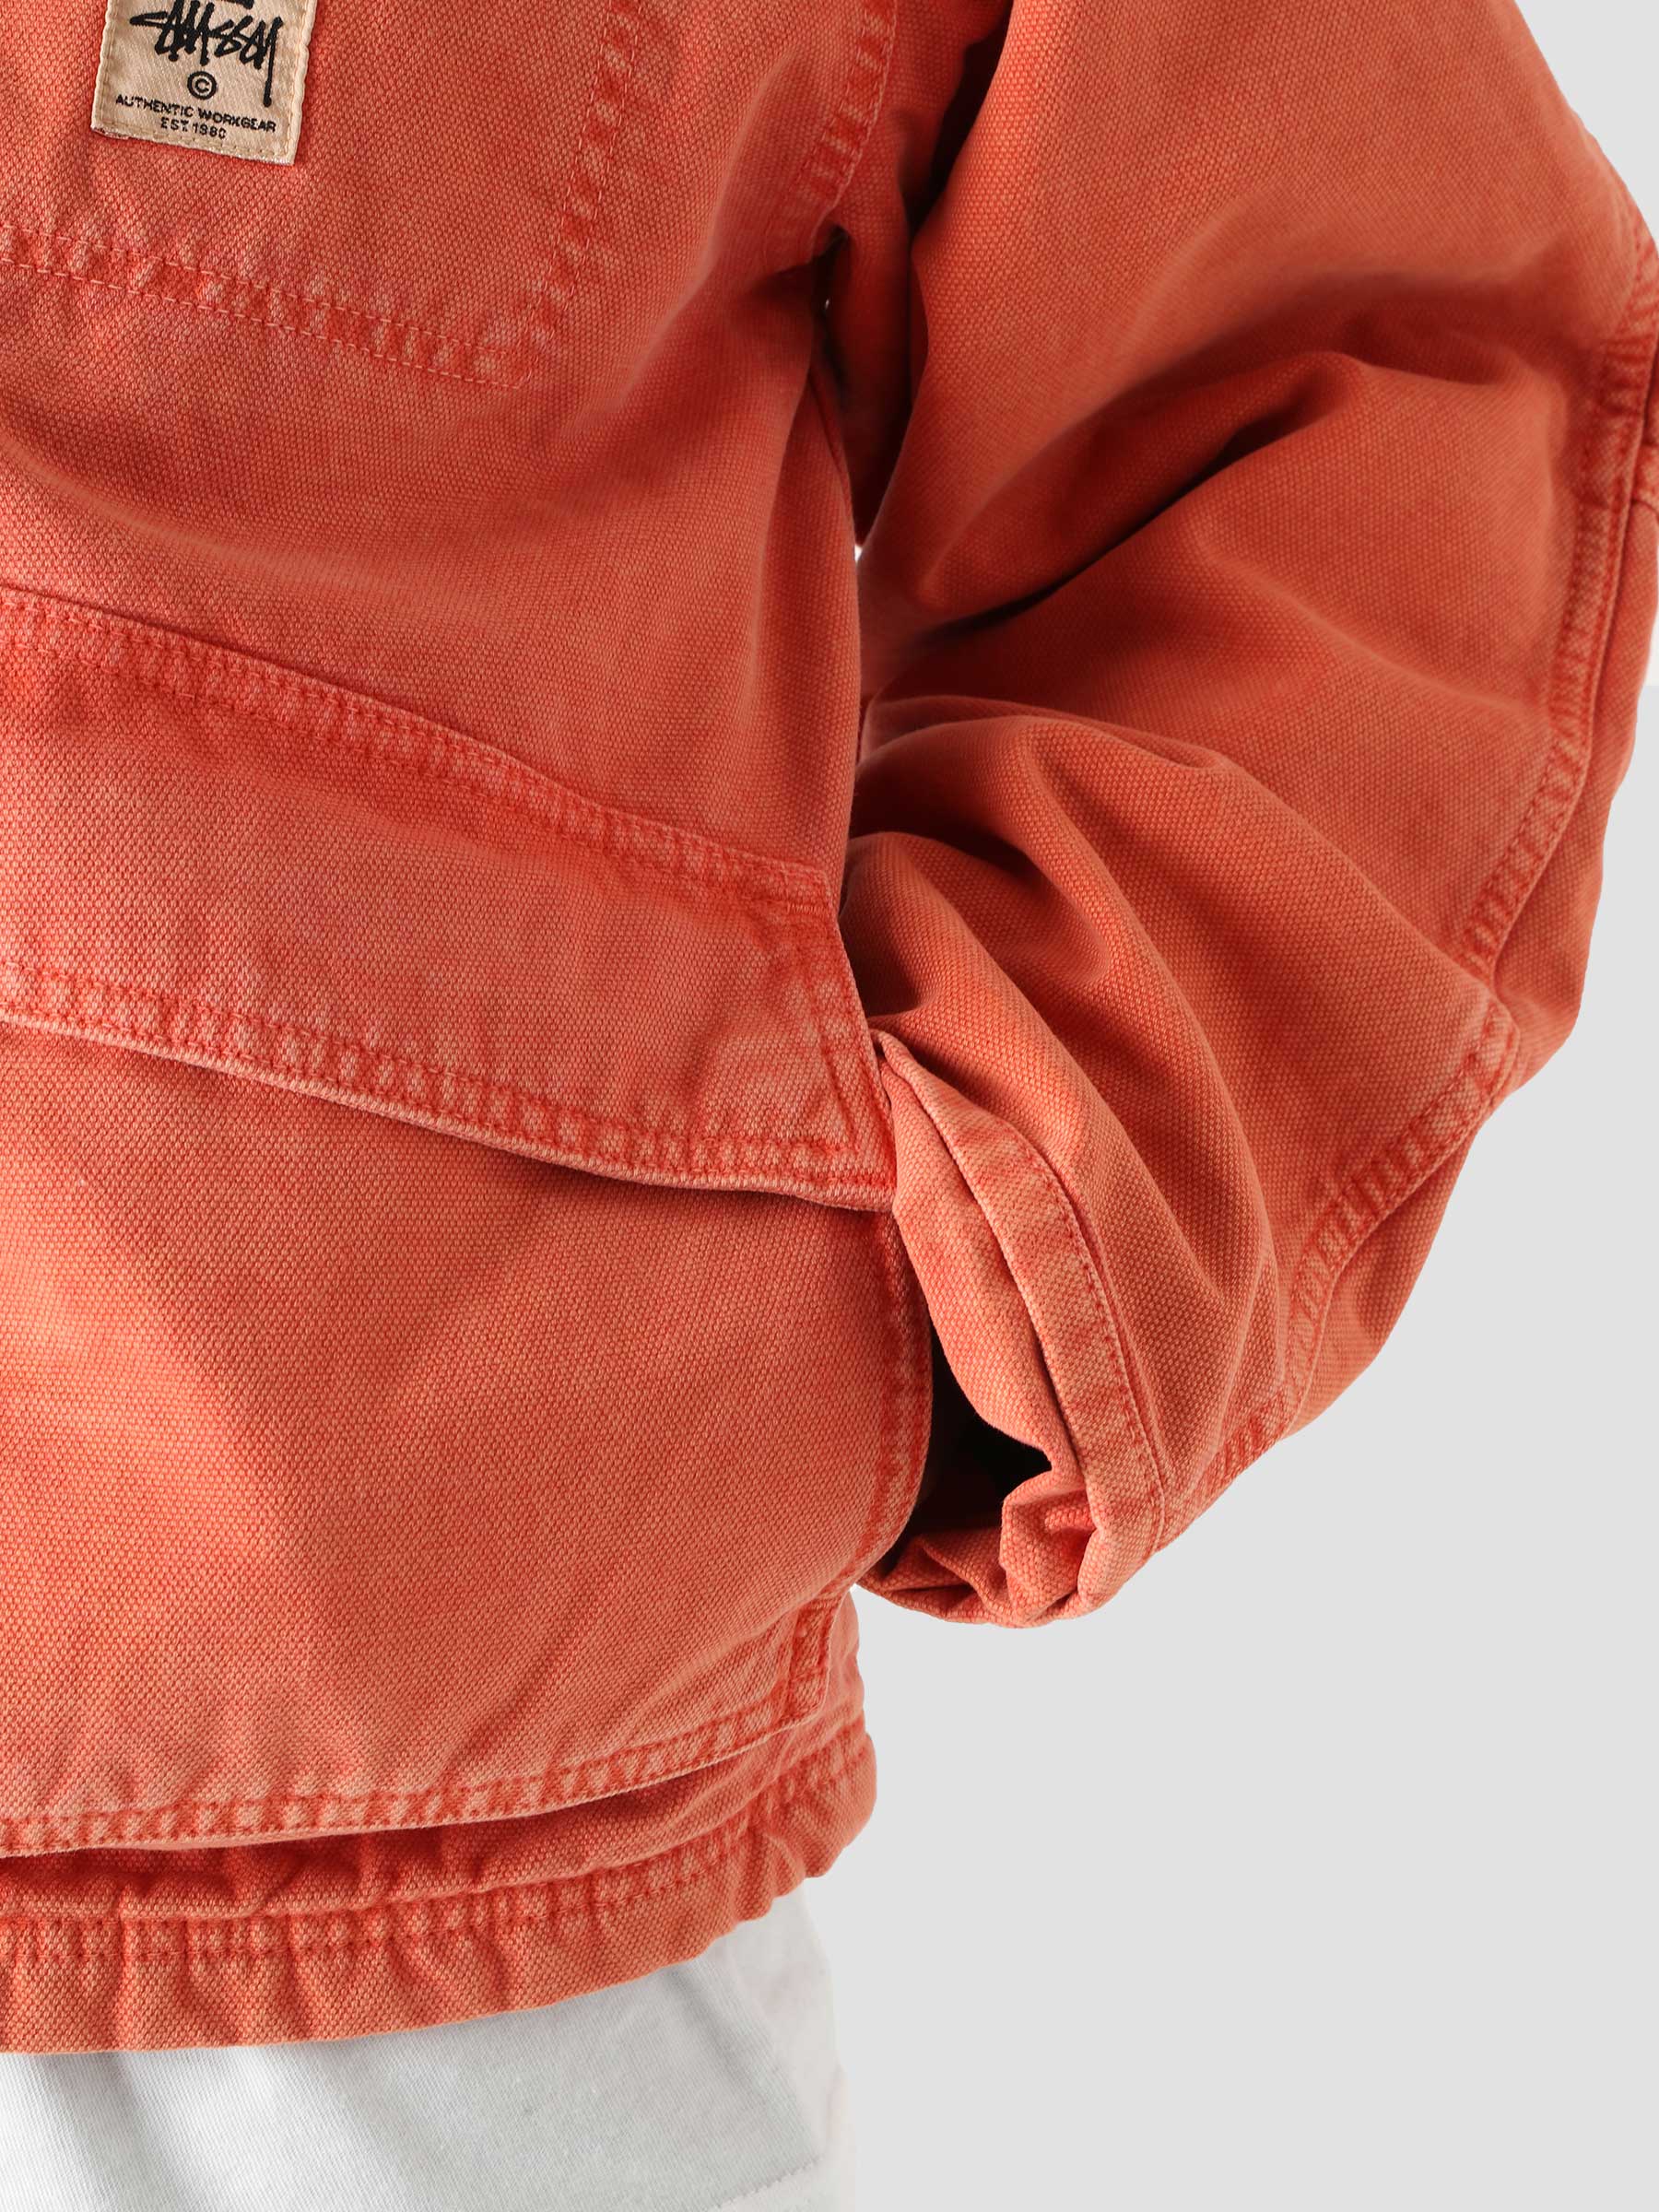 Stussy Washed Canvas Shop Jacket Orange 115589 | Freshcotton